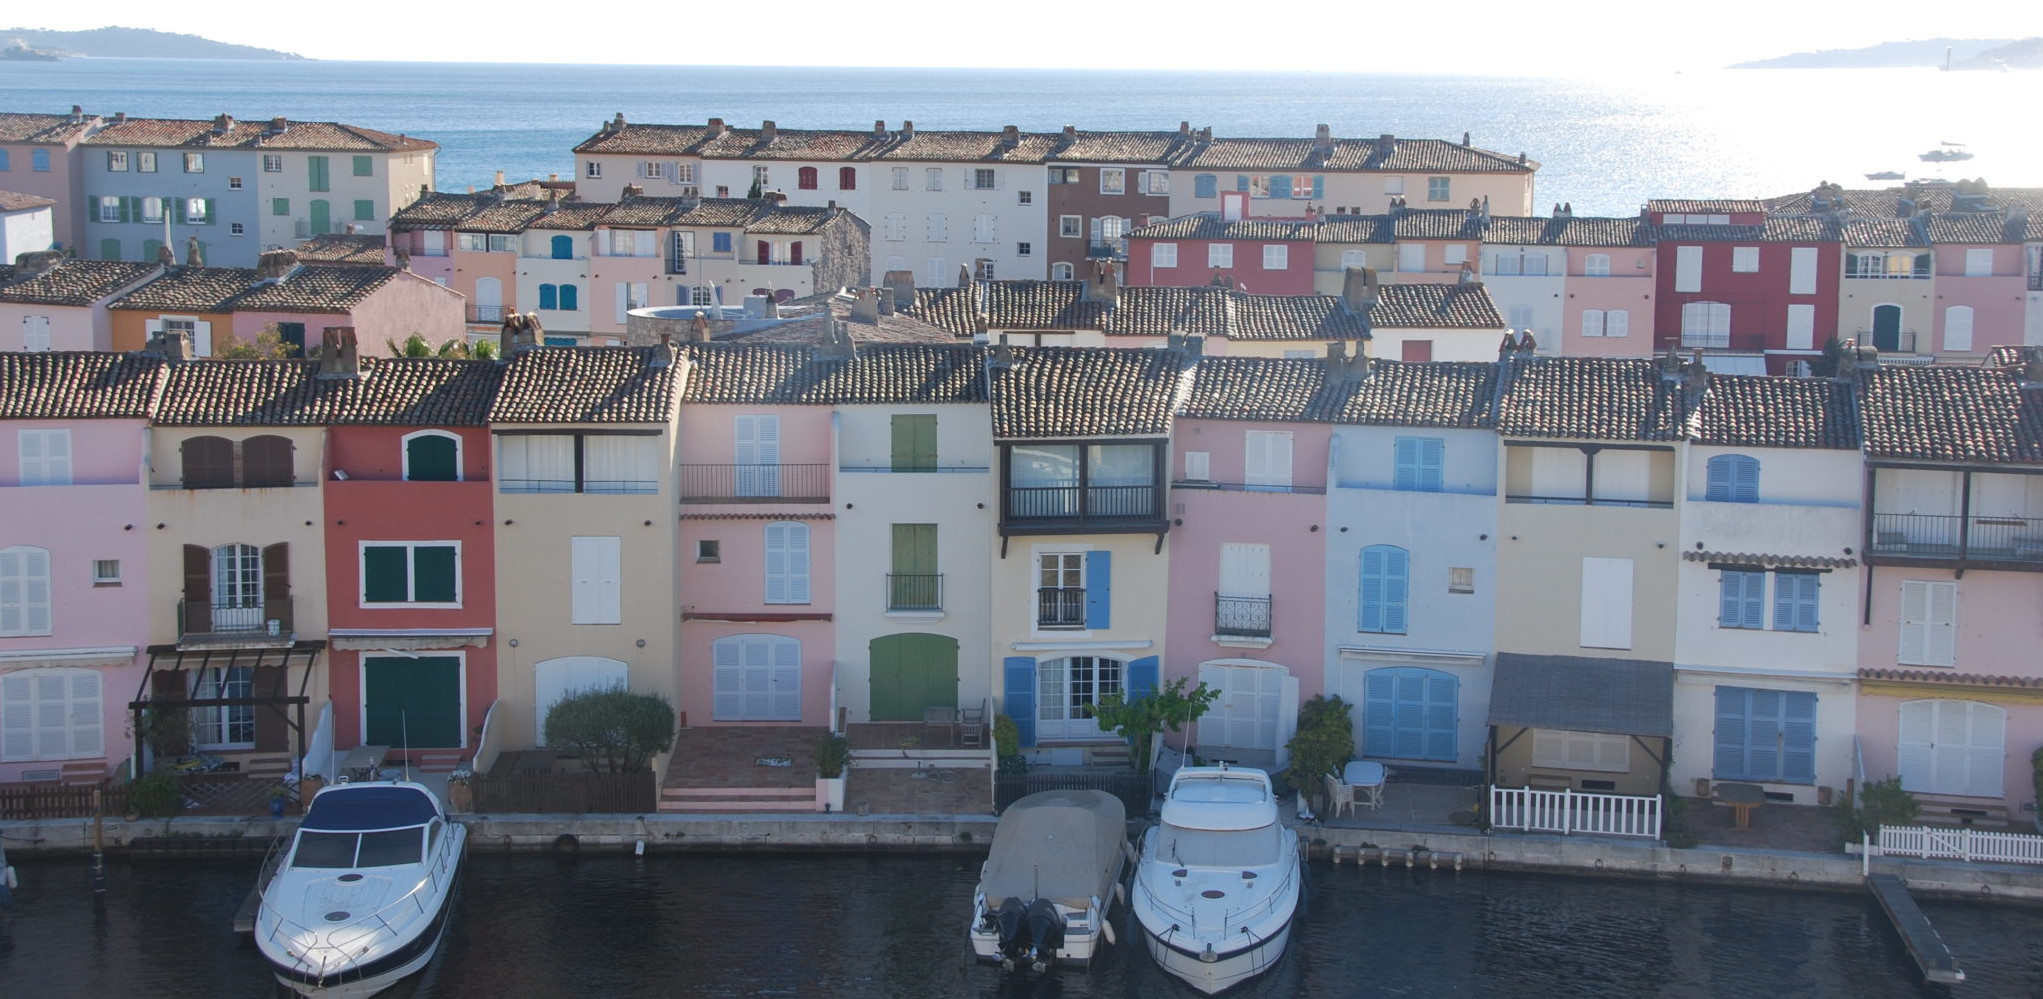 Port-Grimaud, Cote d' Azur